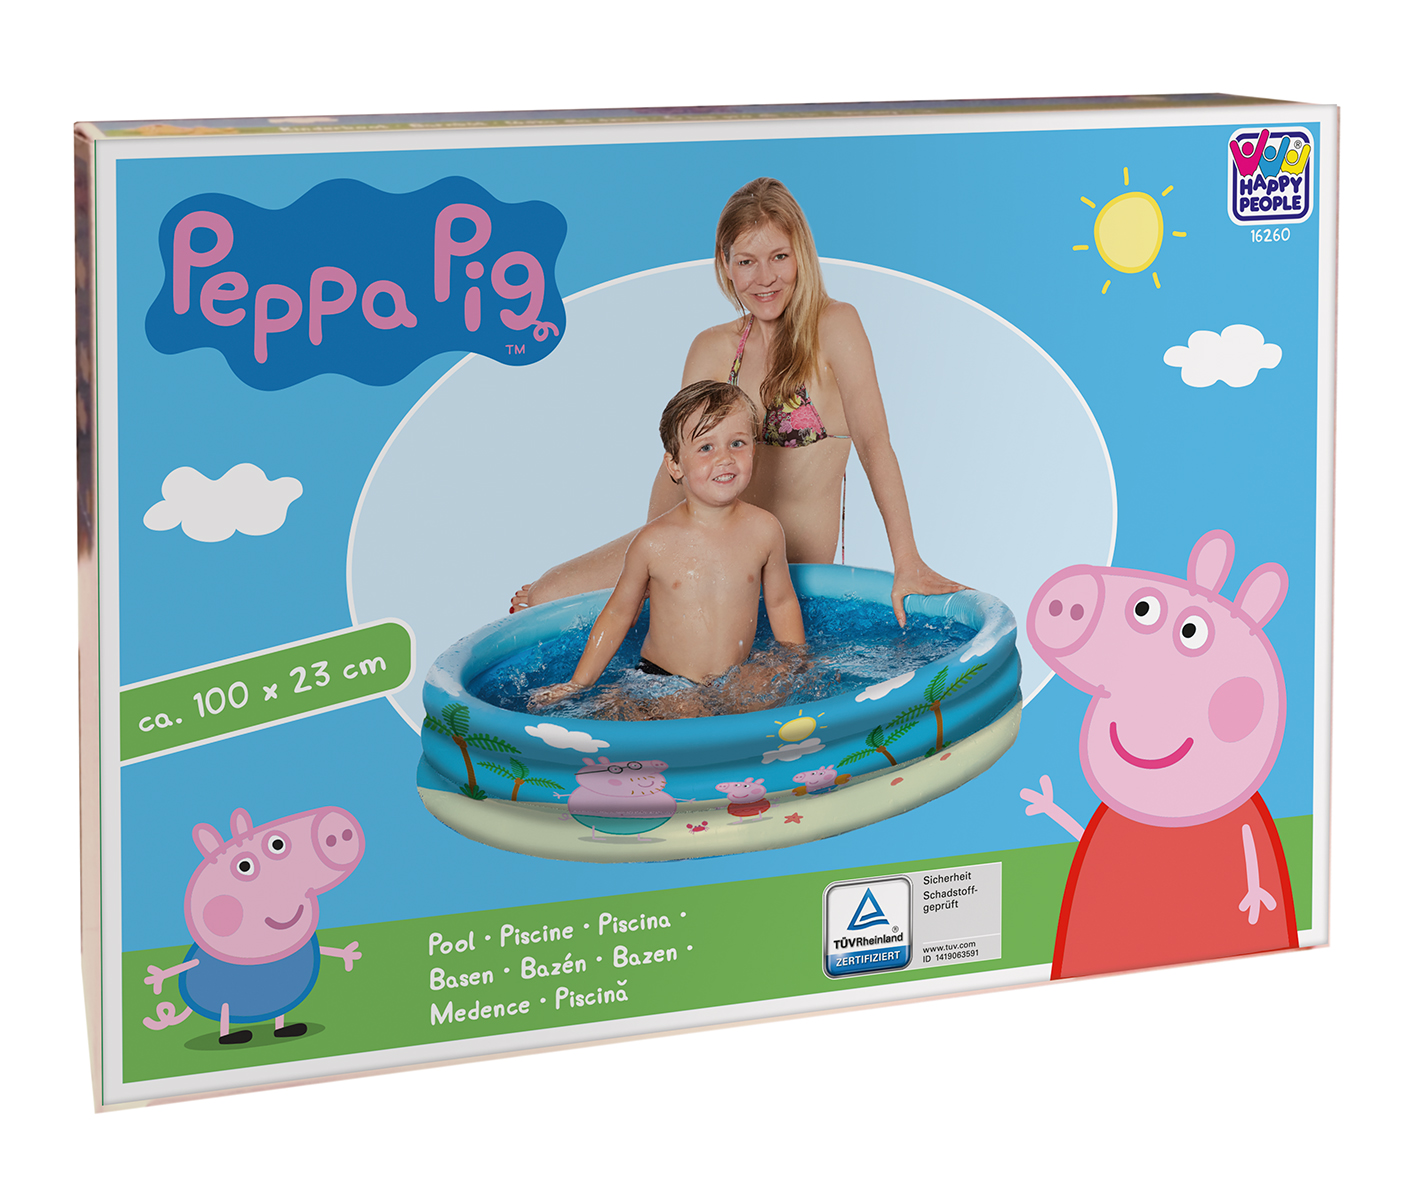 Happy People Peppa Pig 3-Ring-Pool, 100 x 23 cm